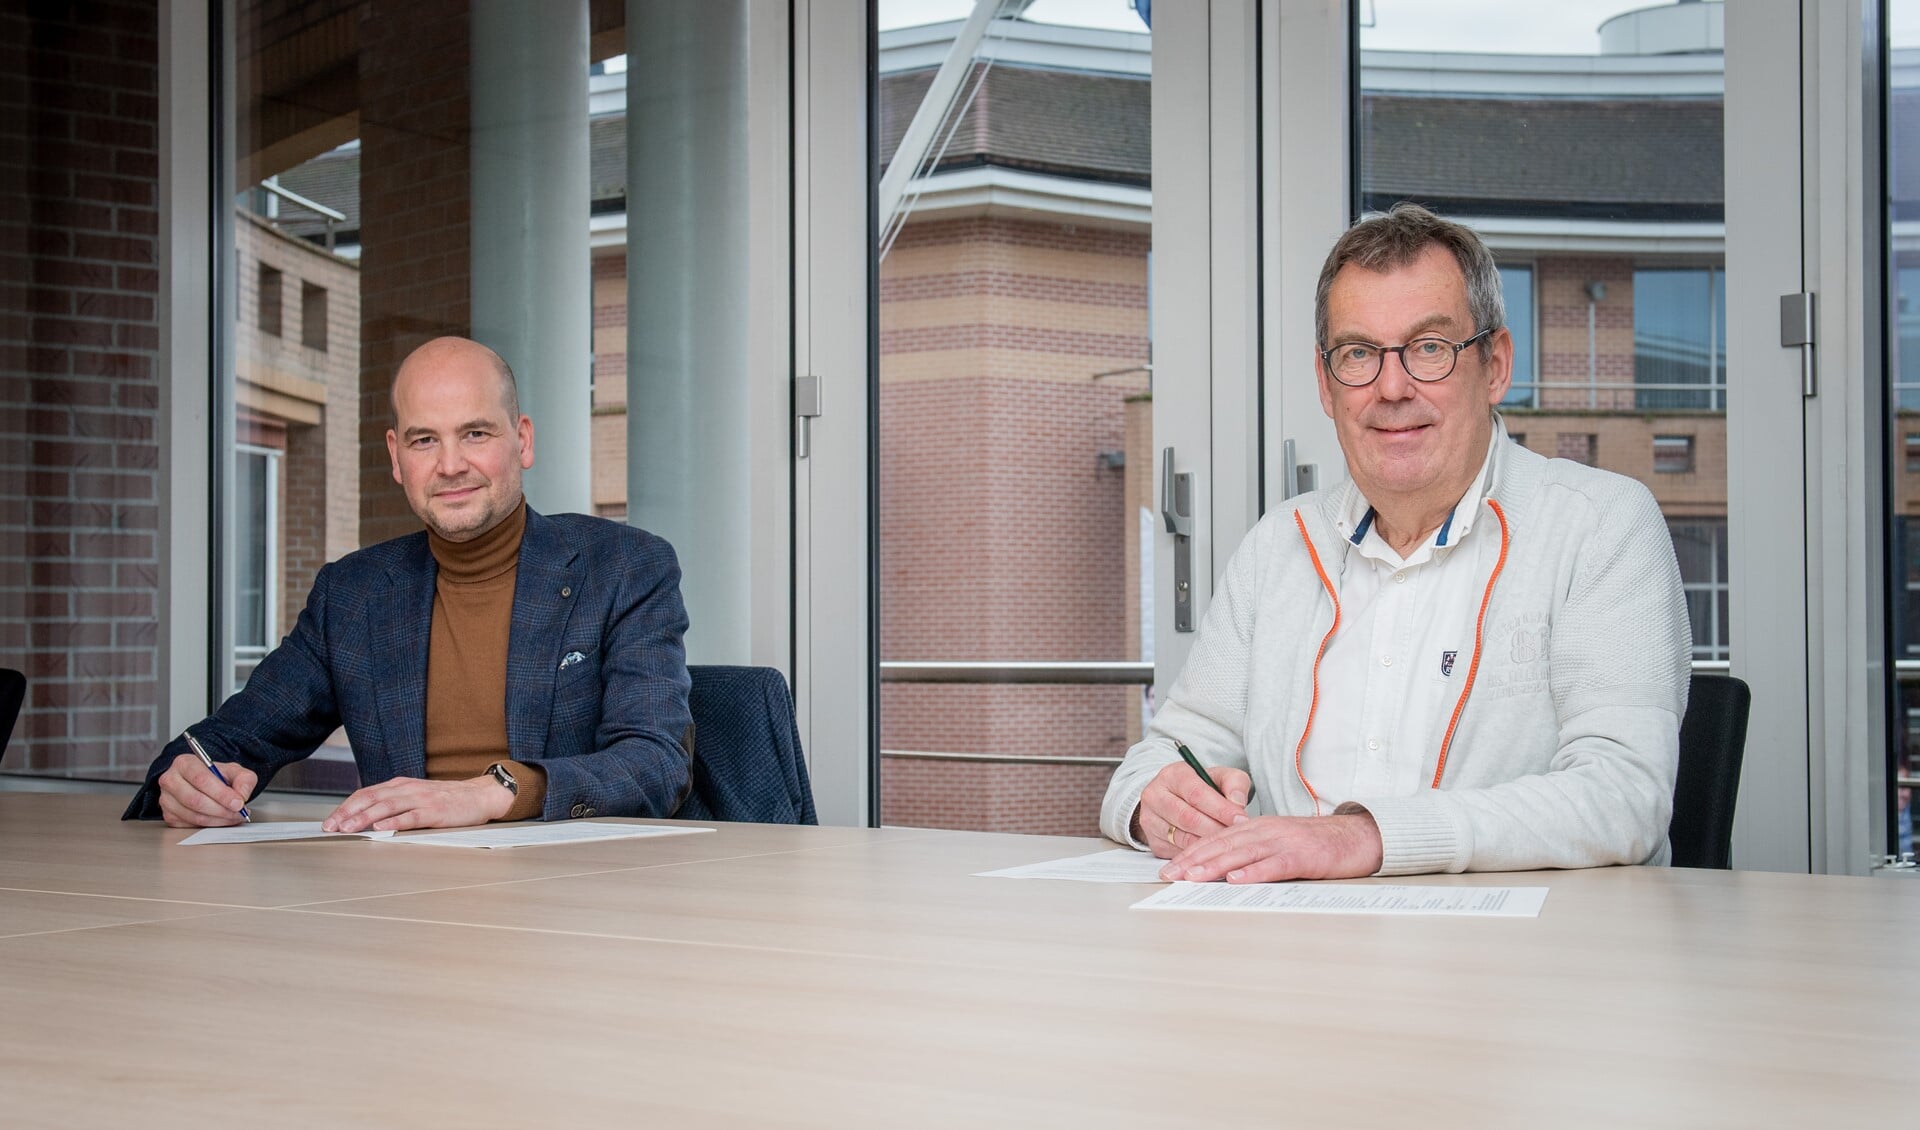 Onder meer Woningbelang-directeur Maarten Meulepas (l) en wethouder Kees Marchal ondertekenden de nieuwe prestatieafspraken.